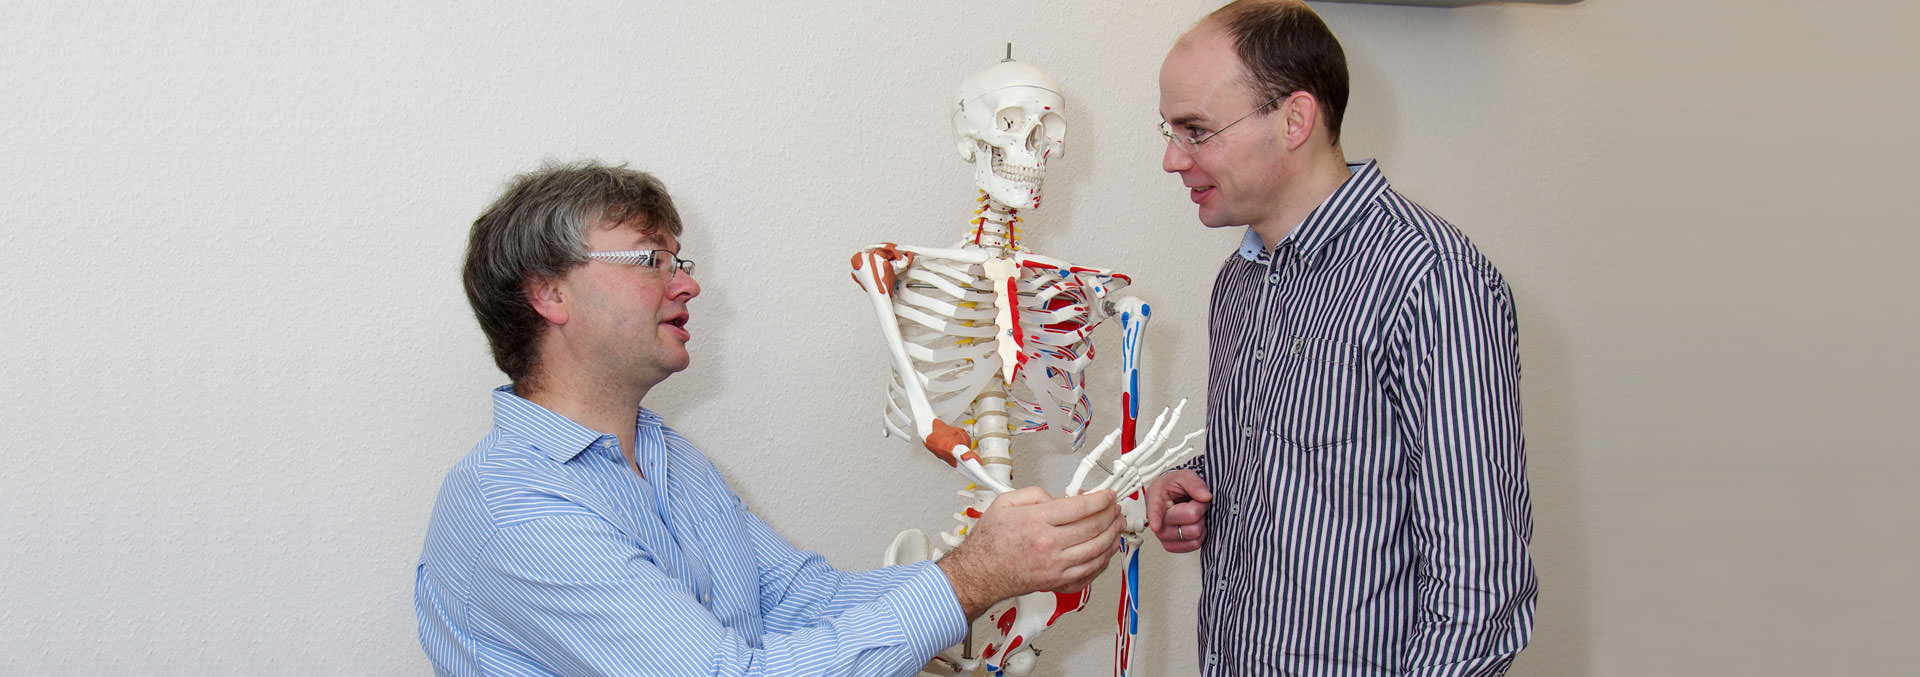 Foto: Dr. Kamp und Dr. Schmitz mit Skelettmodel